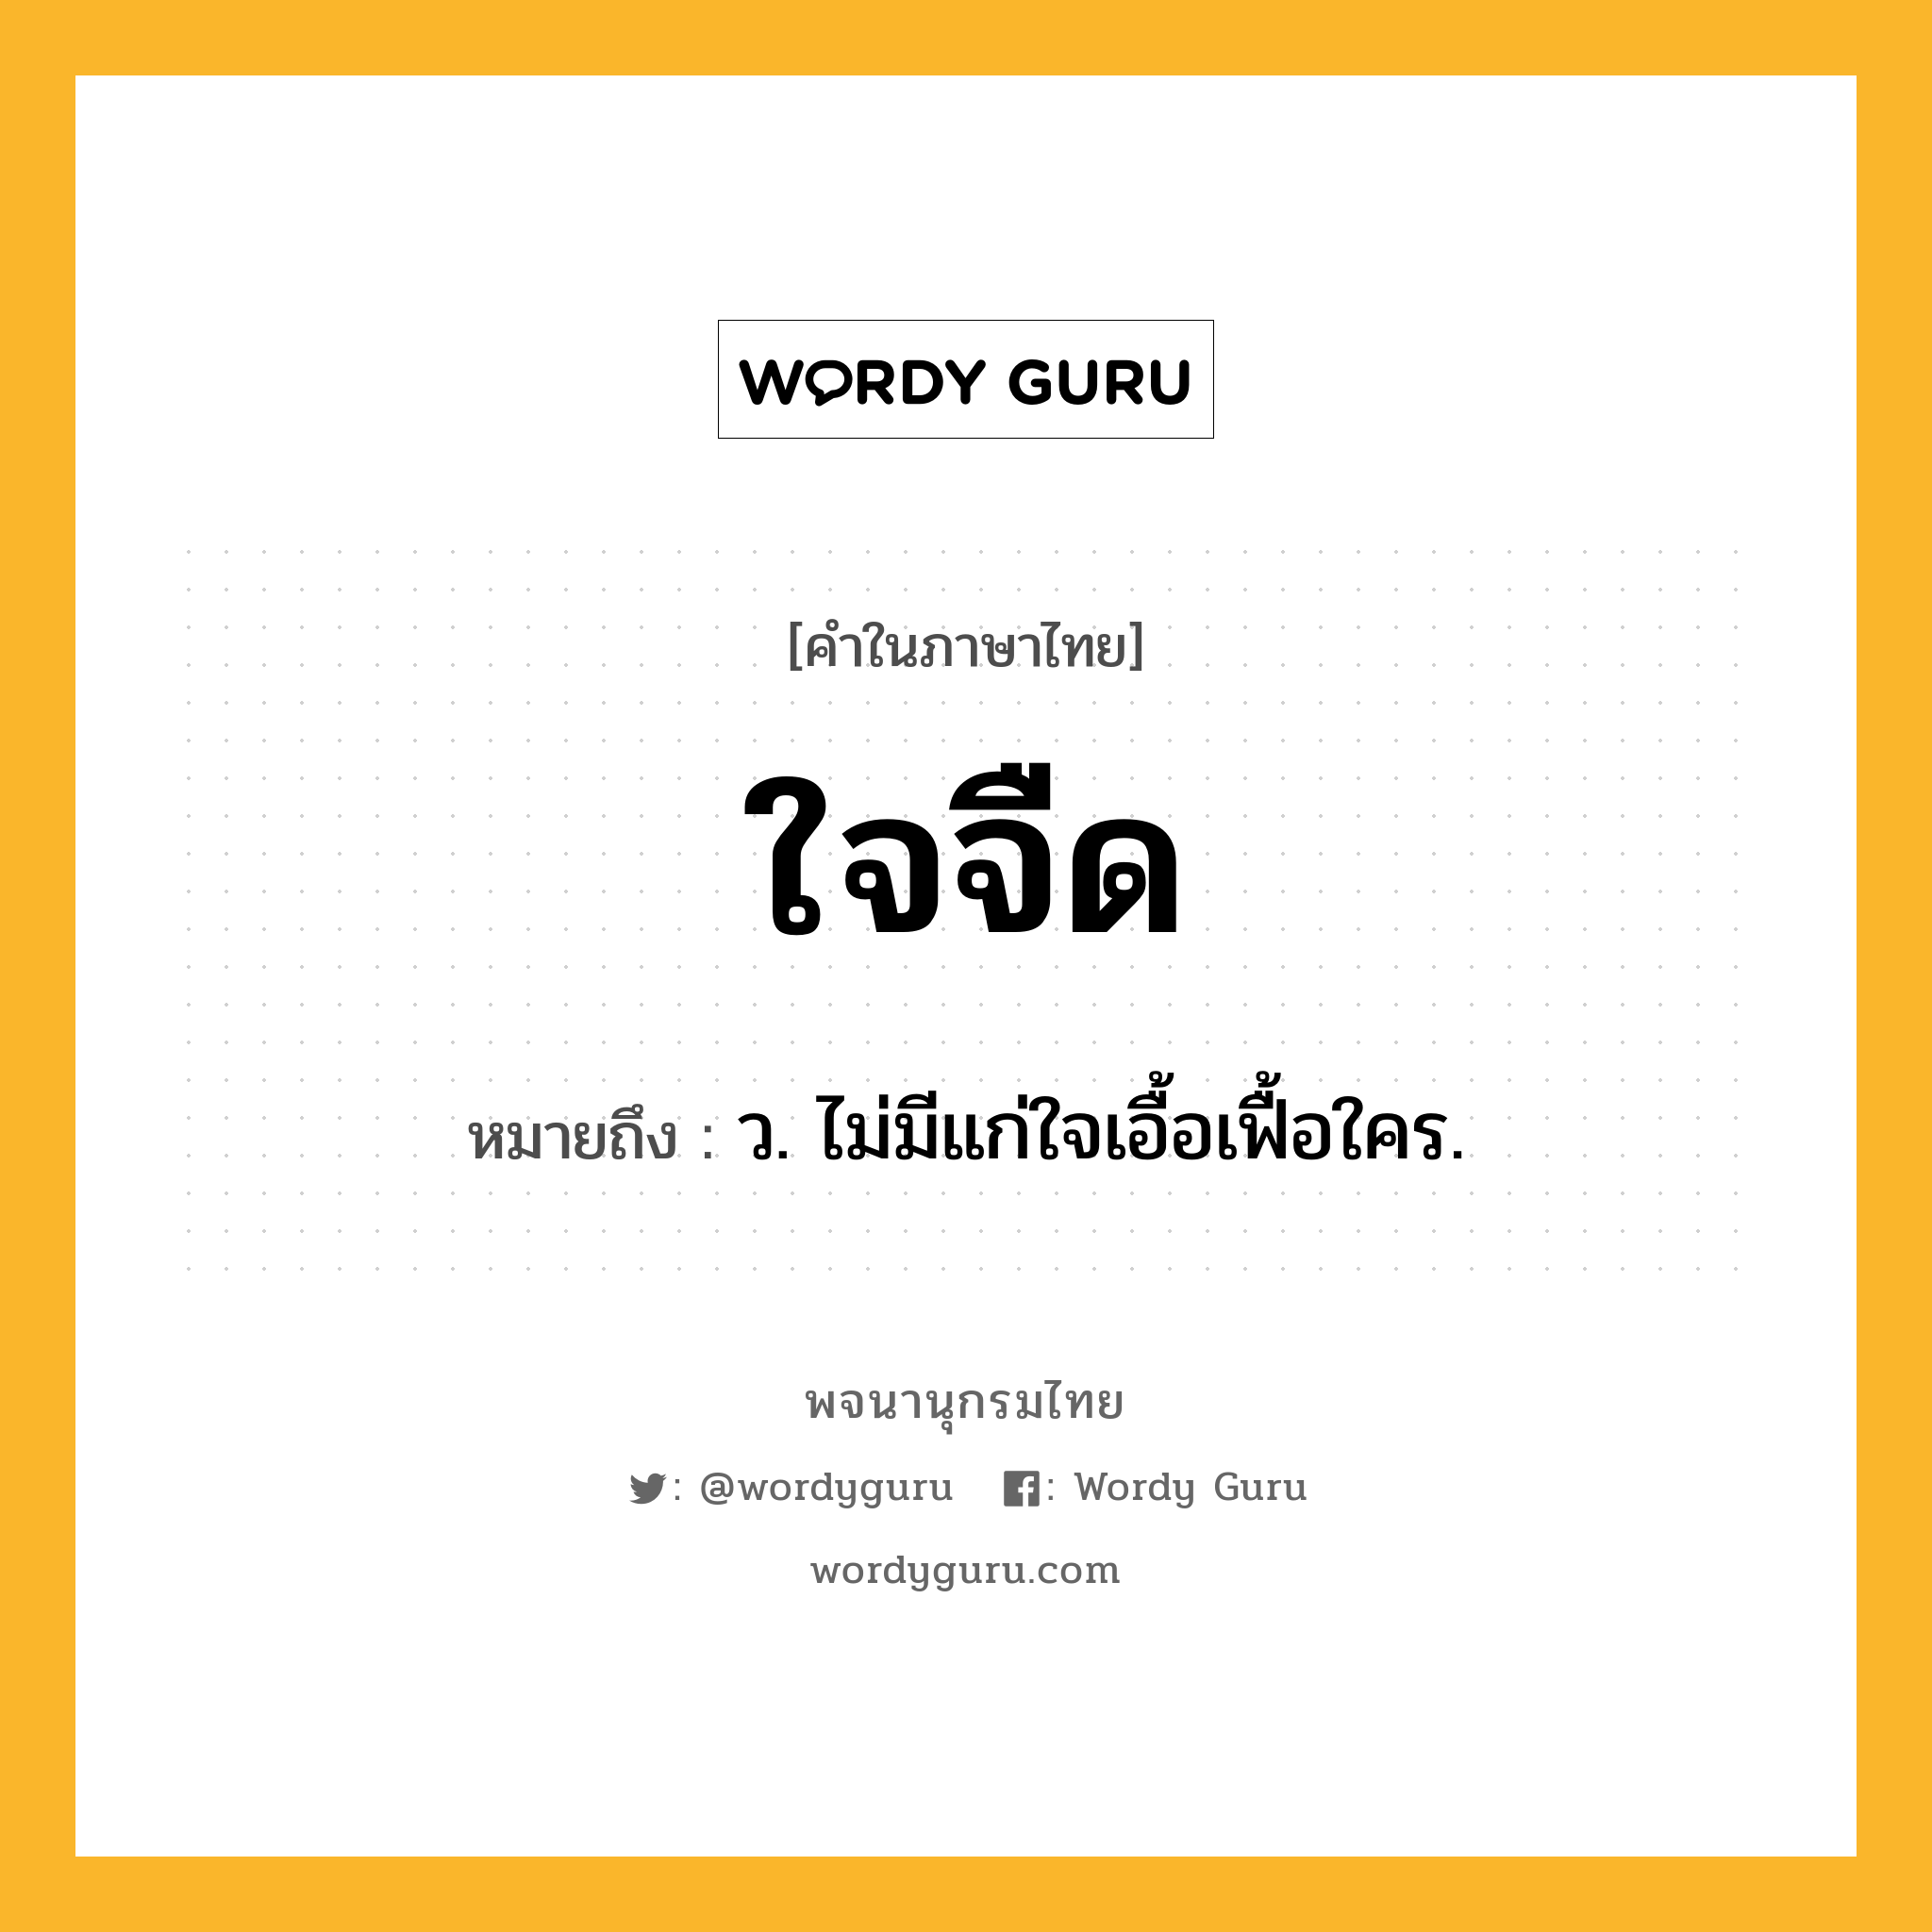 ใจจืด หมายถึงอะไร?, คำในภาษาไทย ใจจืด หมายถึง ว. ไม่มีแก่ใจเอื้อเฟื้อใคร.